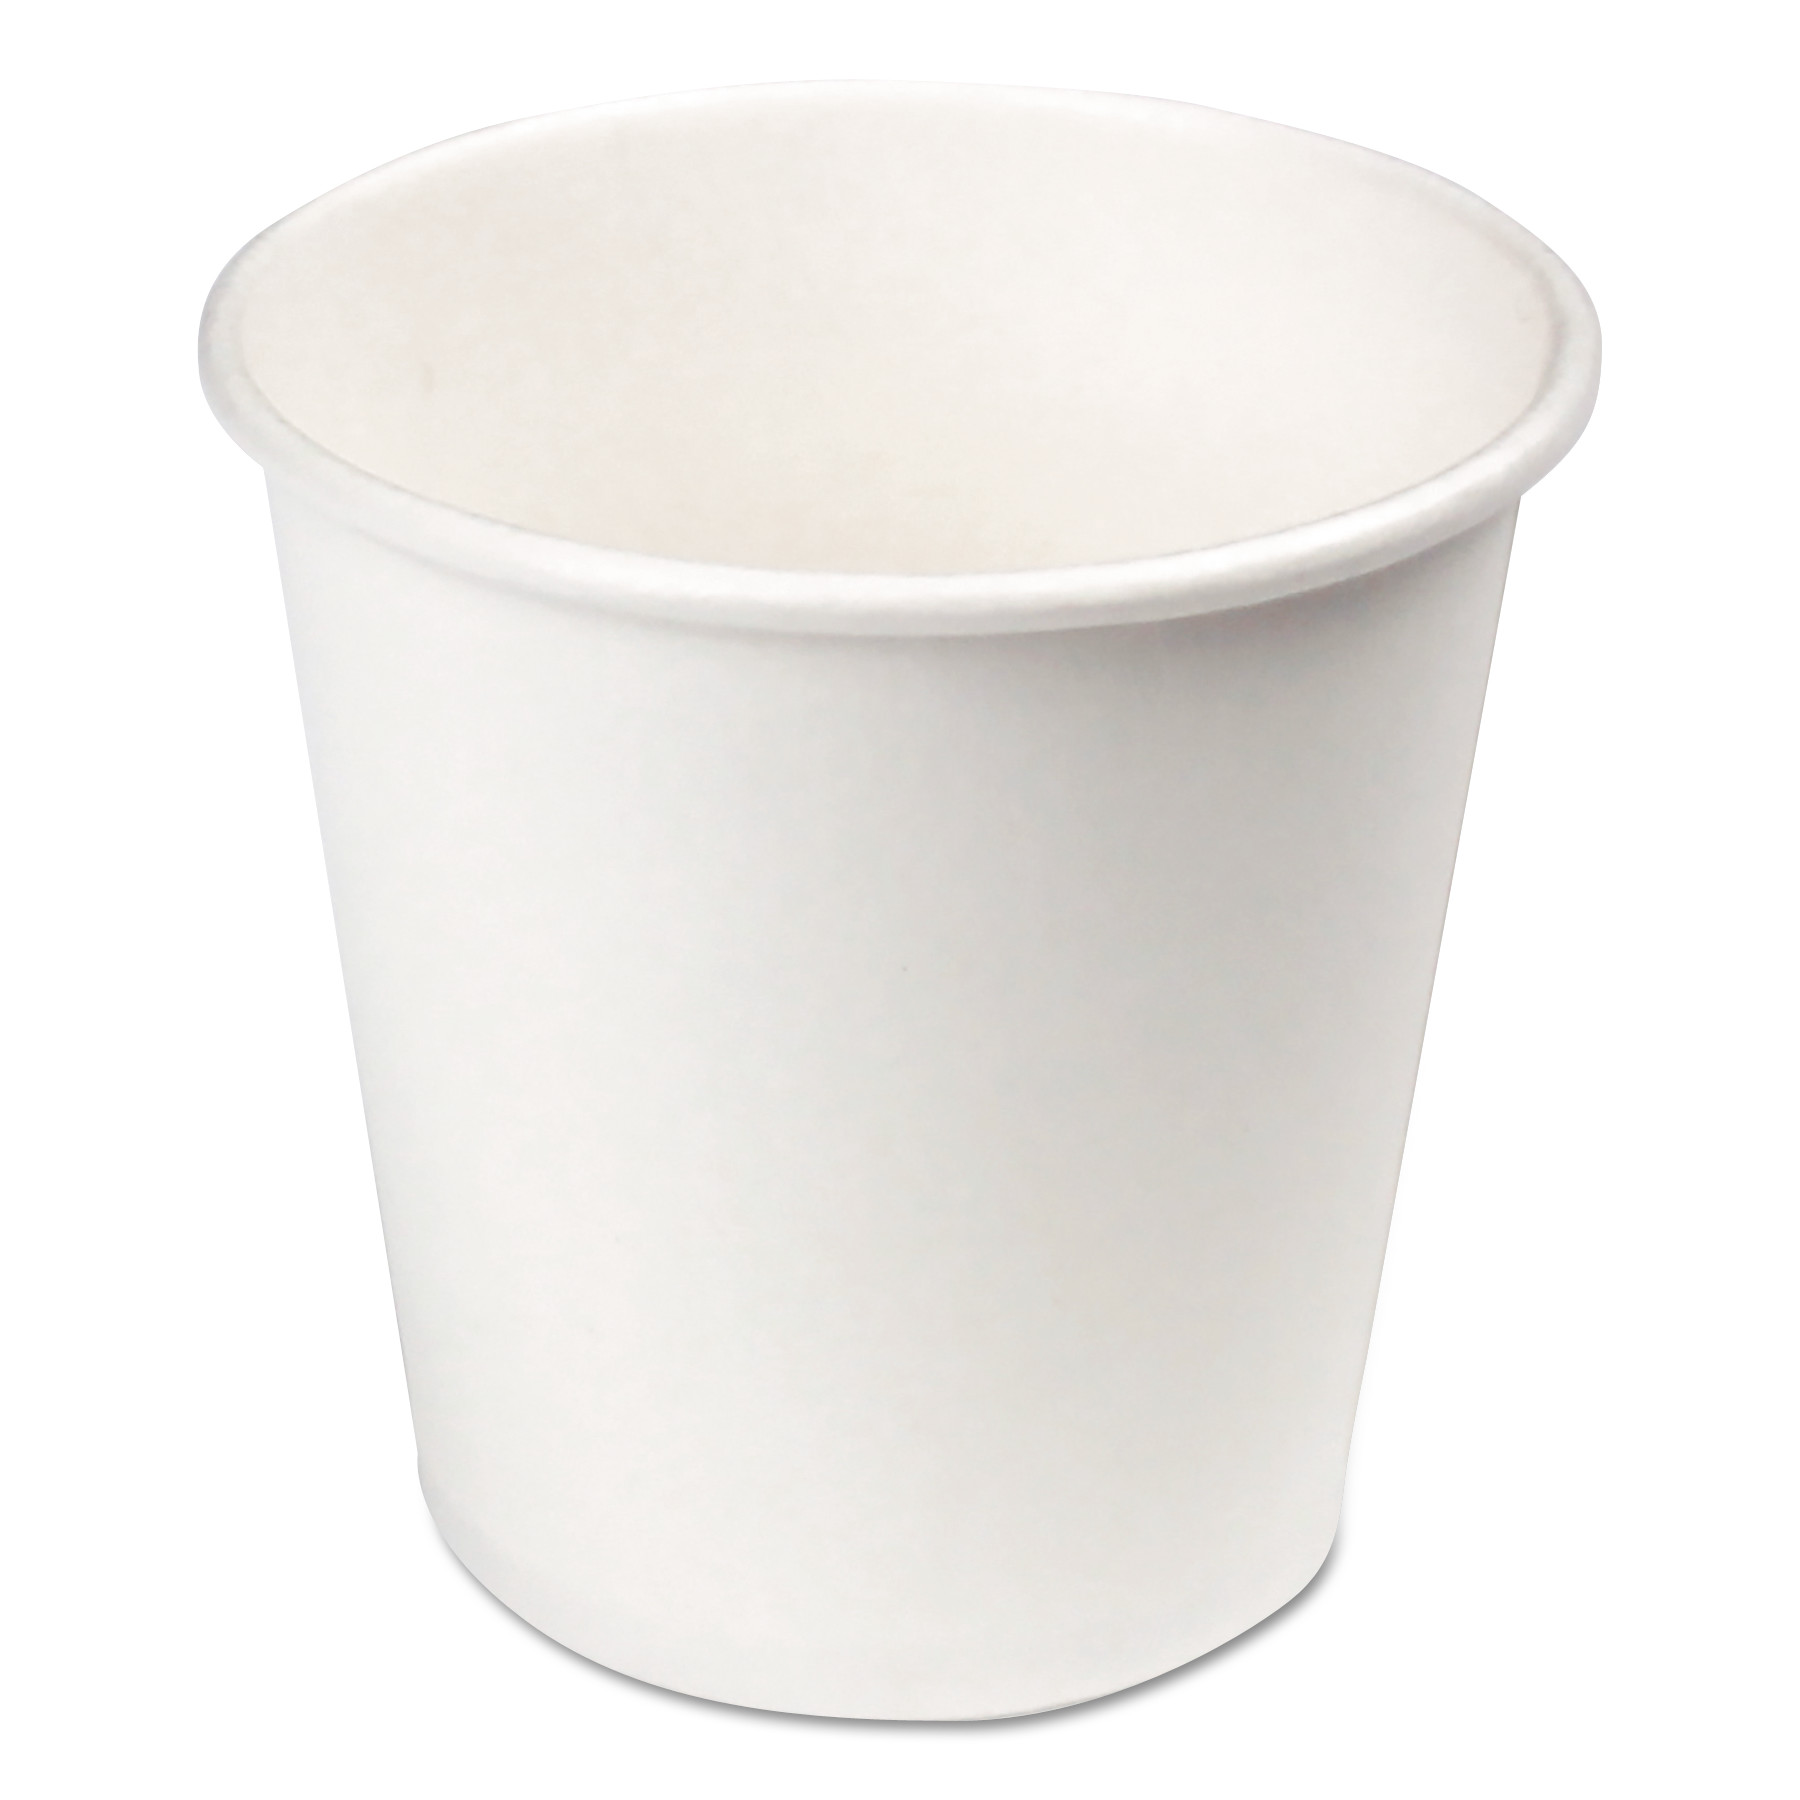 4 oz white paper cups